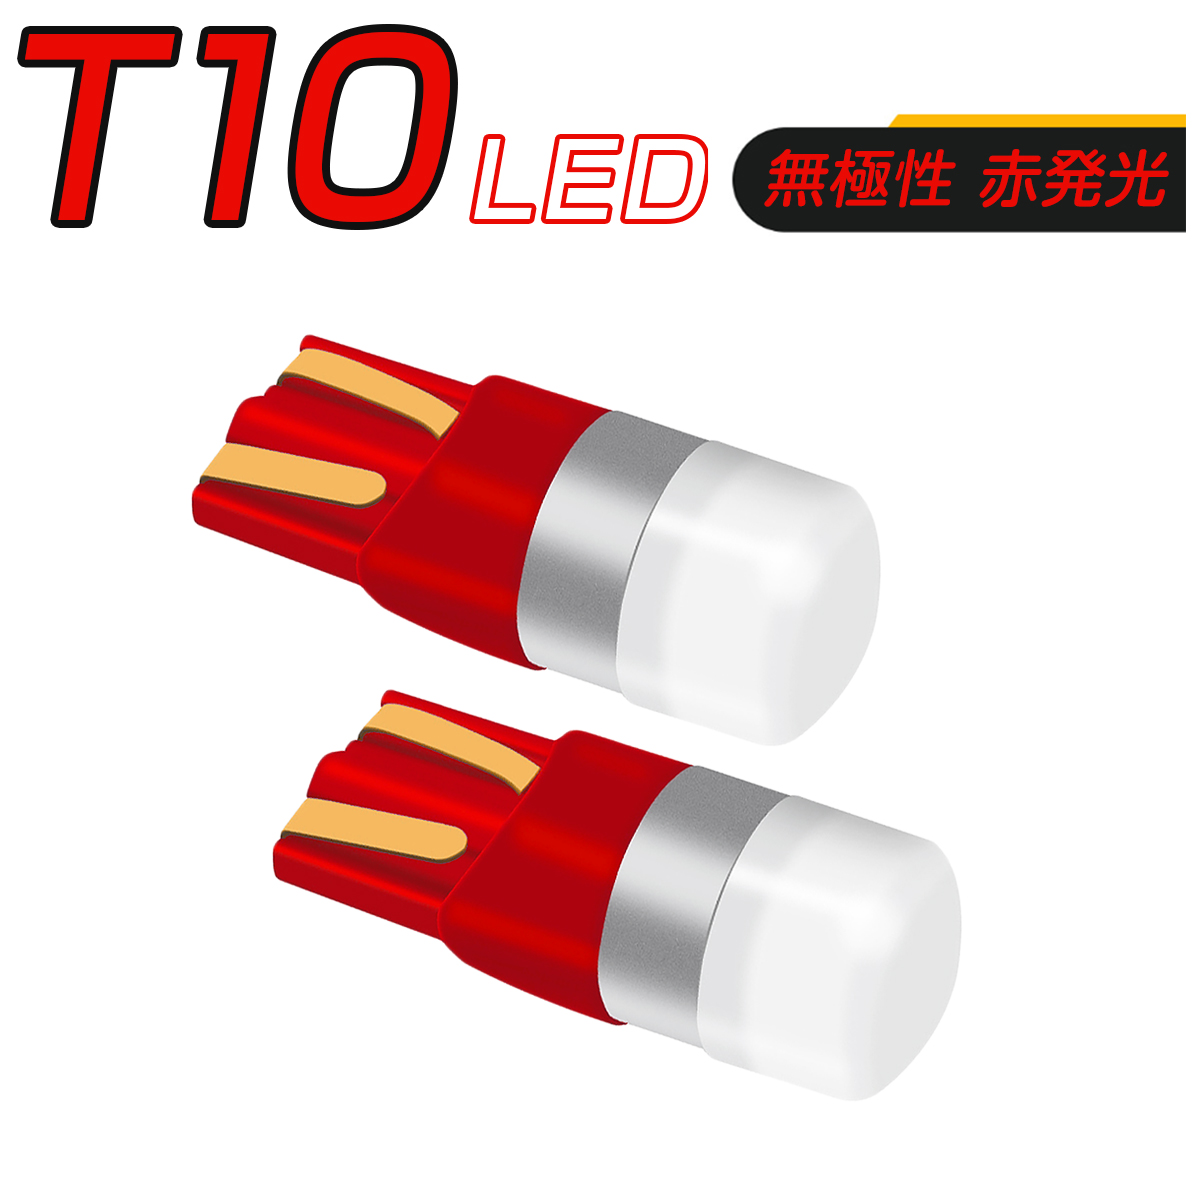 LED 赤 T10 T13 T15 T16 キャンセラー付き 150LM 12V/24V 無極性 2個セット 外車対応 SDM便送料無料 3ヶ月保証